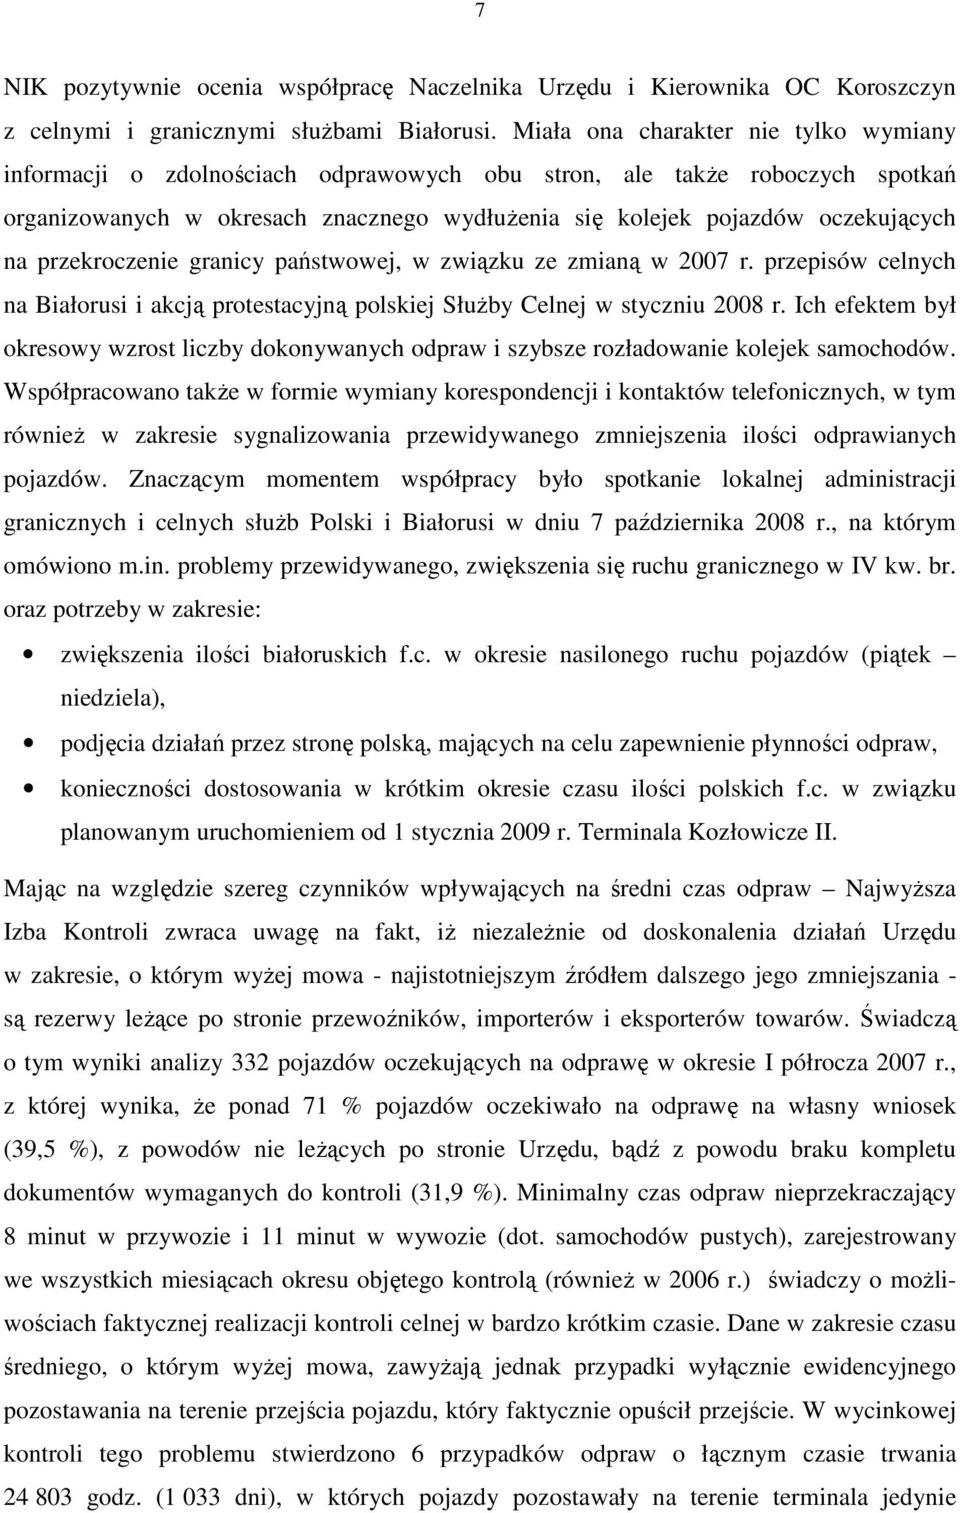 przekroczenie granicy państwowej, w związku ze zmianą w 2007 r. przepisów celnych na Białorusi i akcją protestacyjną polskiej SłuŜby Celnej w styczniu 2008 r.